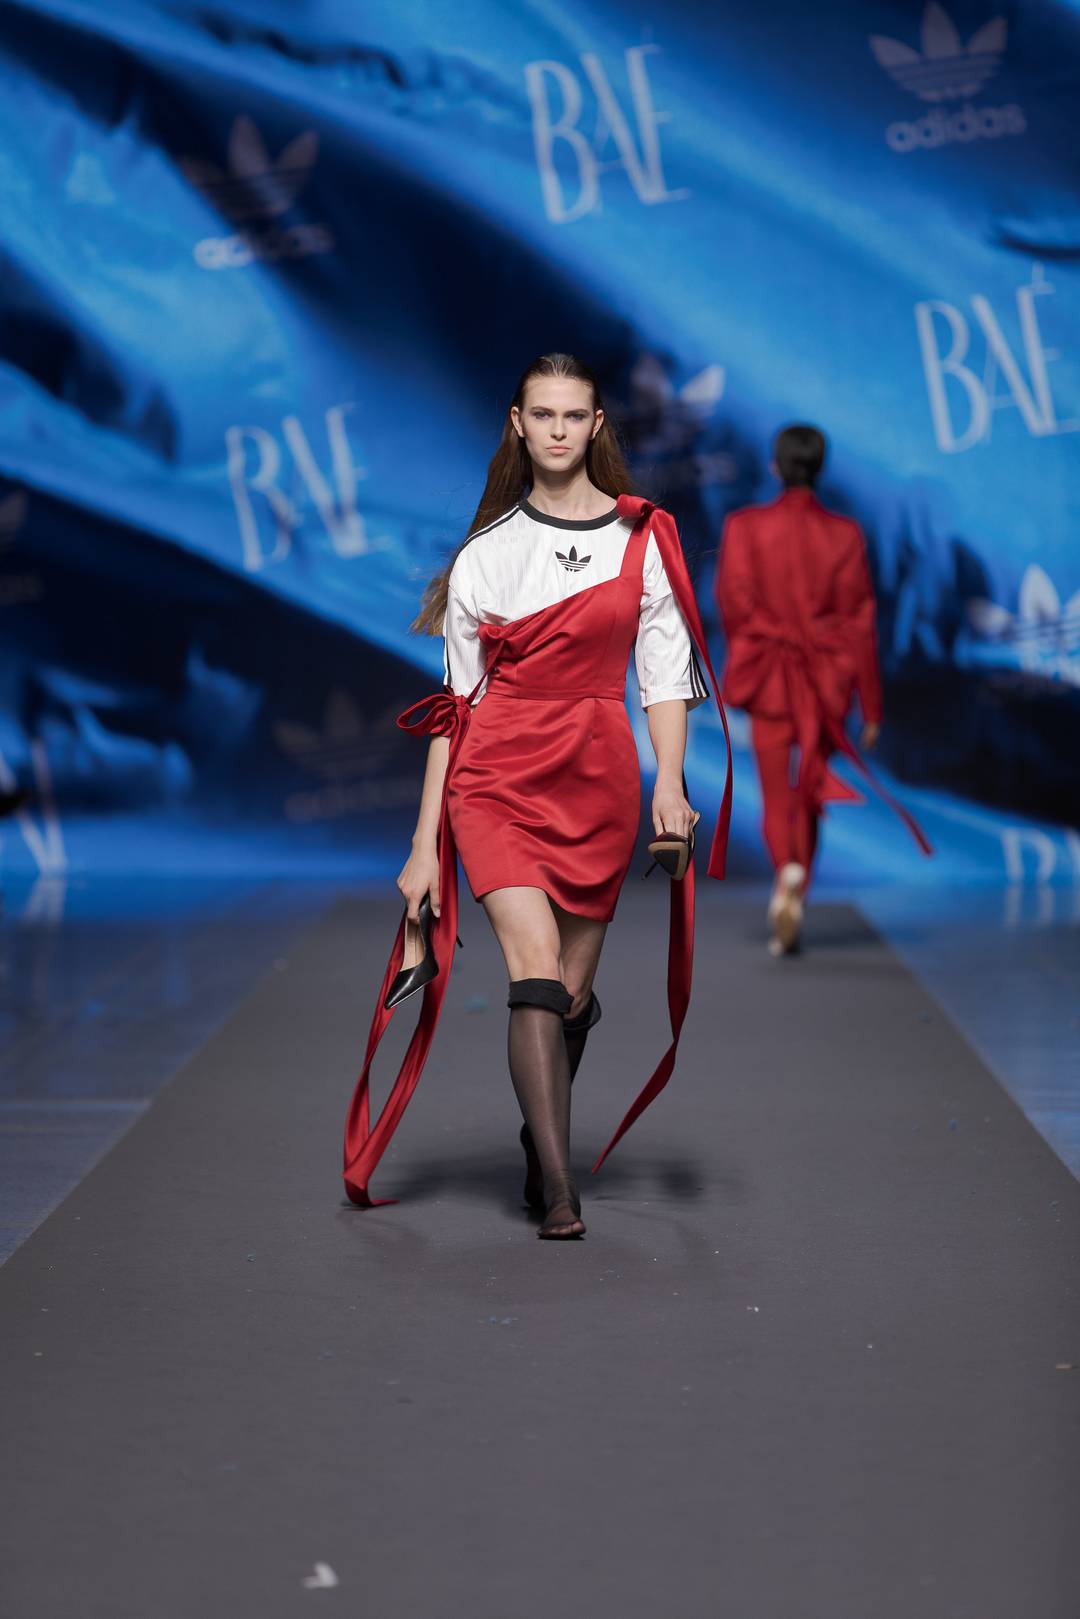 Adidas x BAÉ by Katya Shehurina en Riga Fashion Week